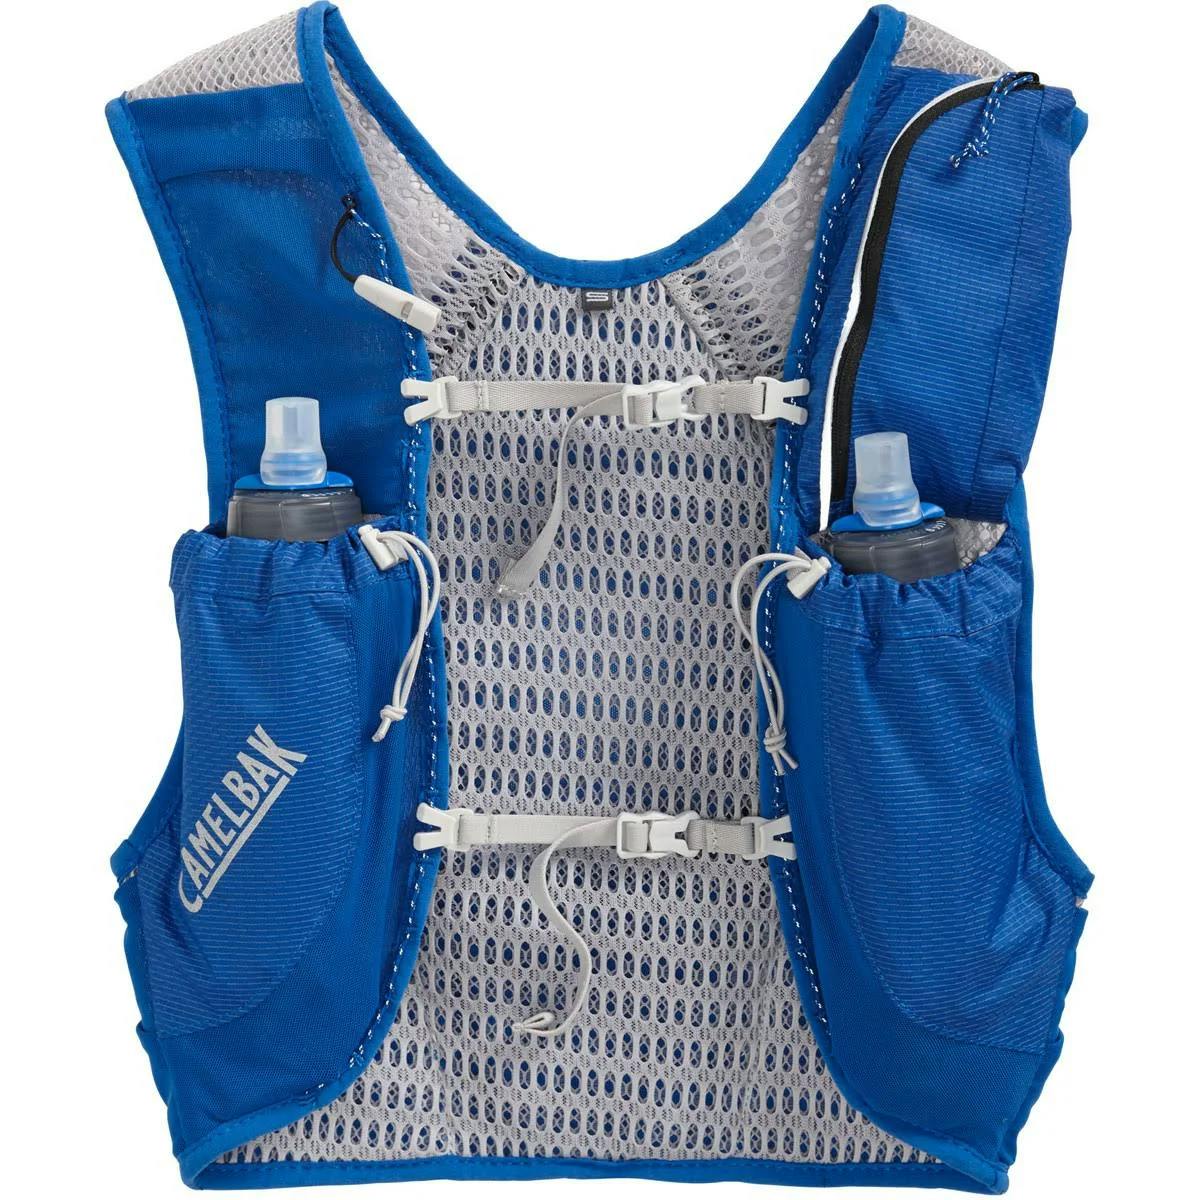 Camelbak Nano 3 Hydration Vest